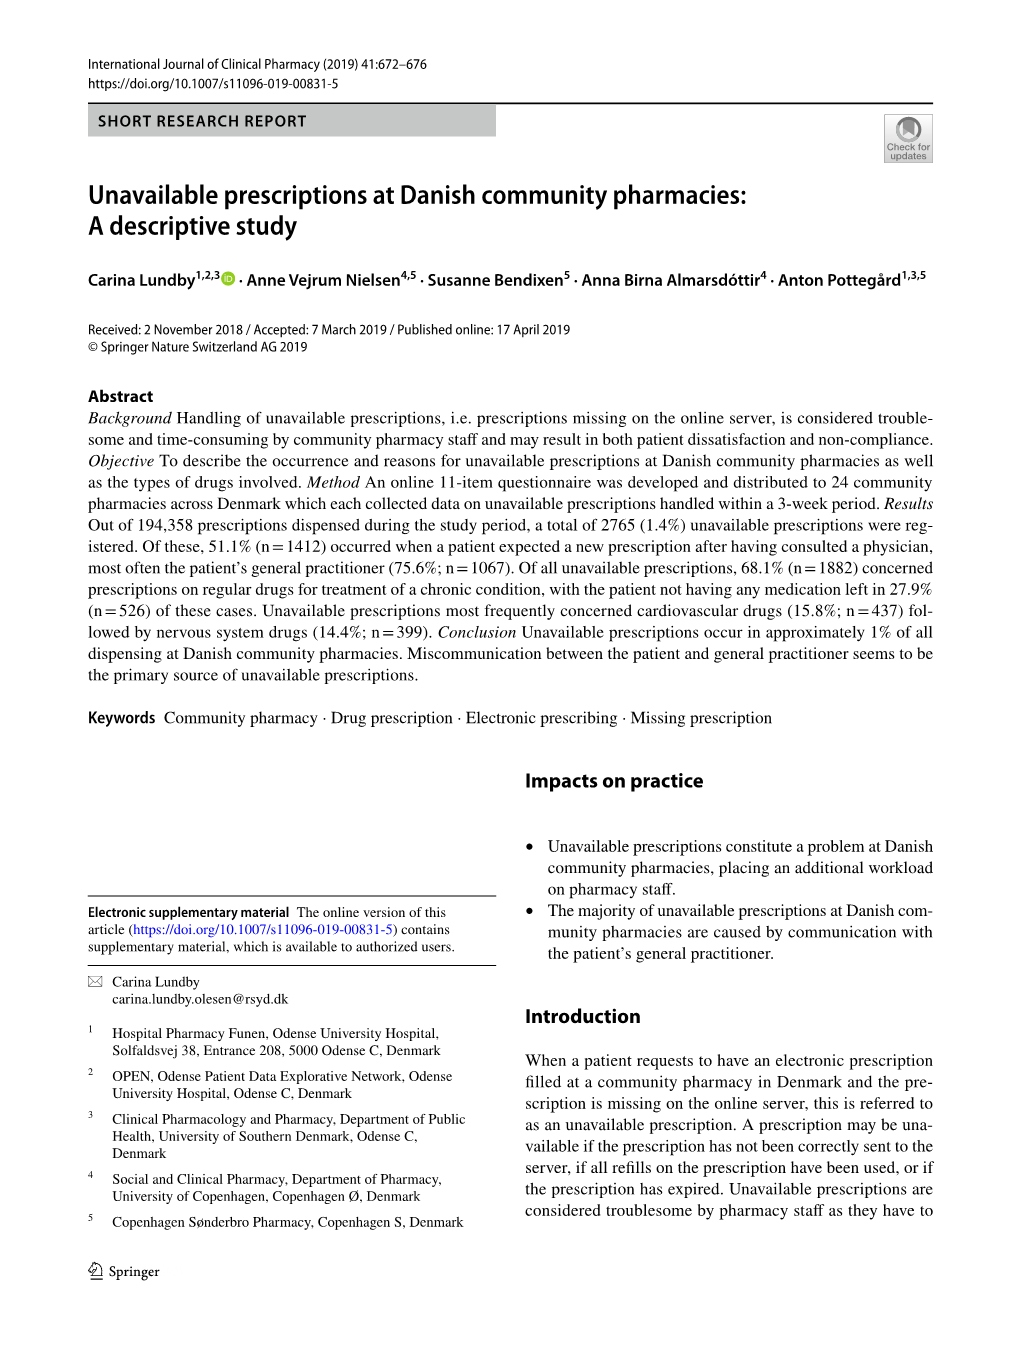 Unavailable Prescriptions at Danish Community Pharmacies: a Descriptive Study